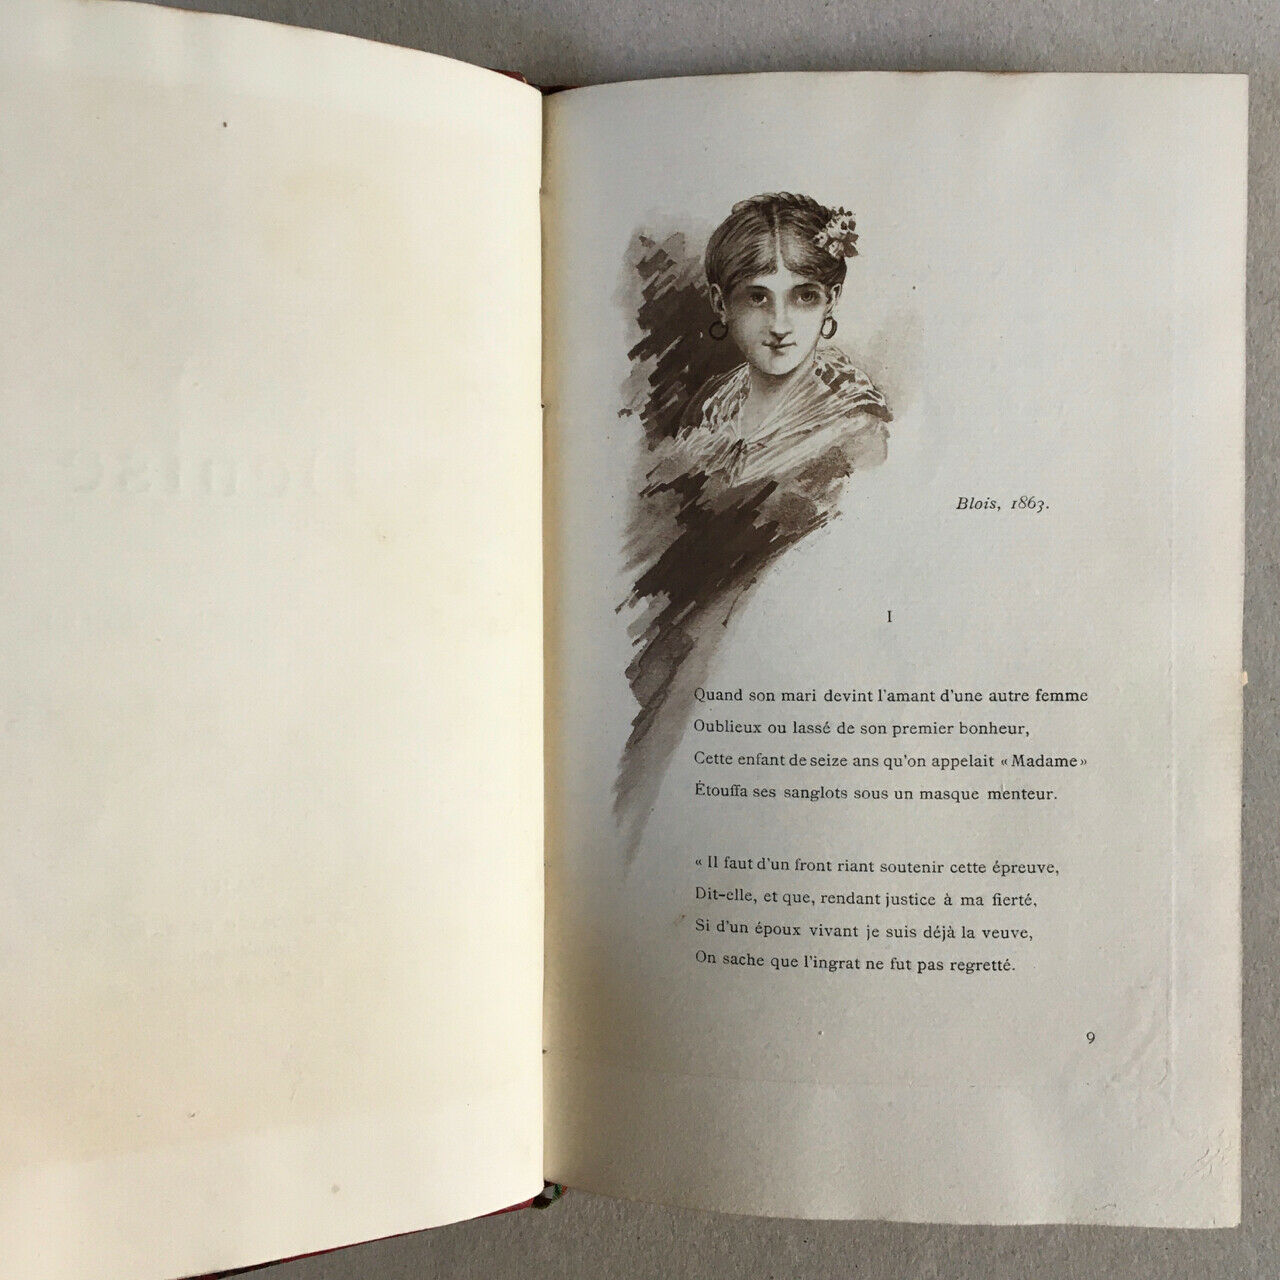 Aurélien Scholl — Denise — illustrations par Grivaz — Rouveyre & Blond — 1884.